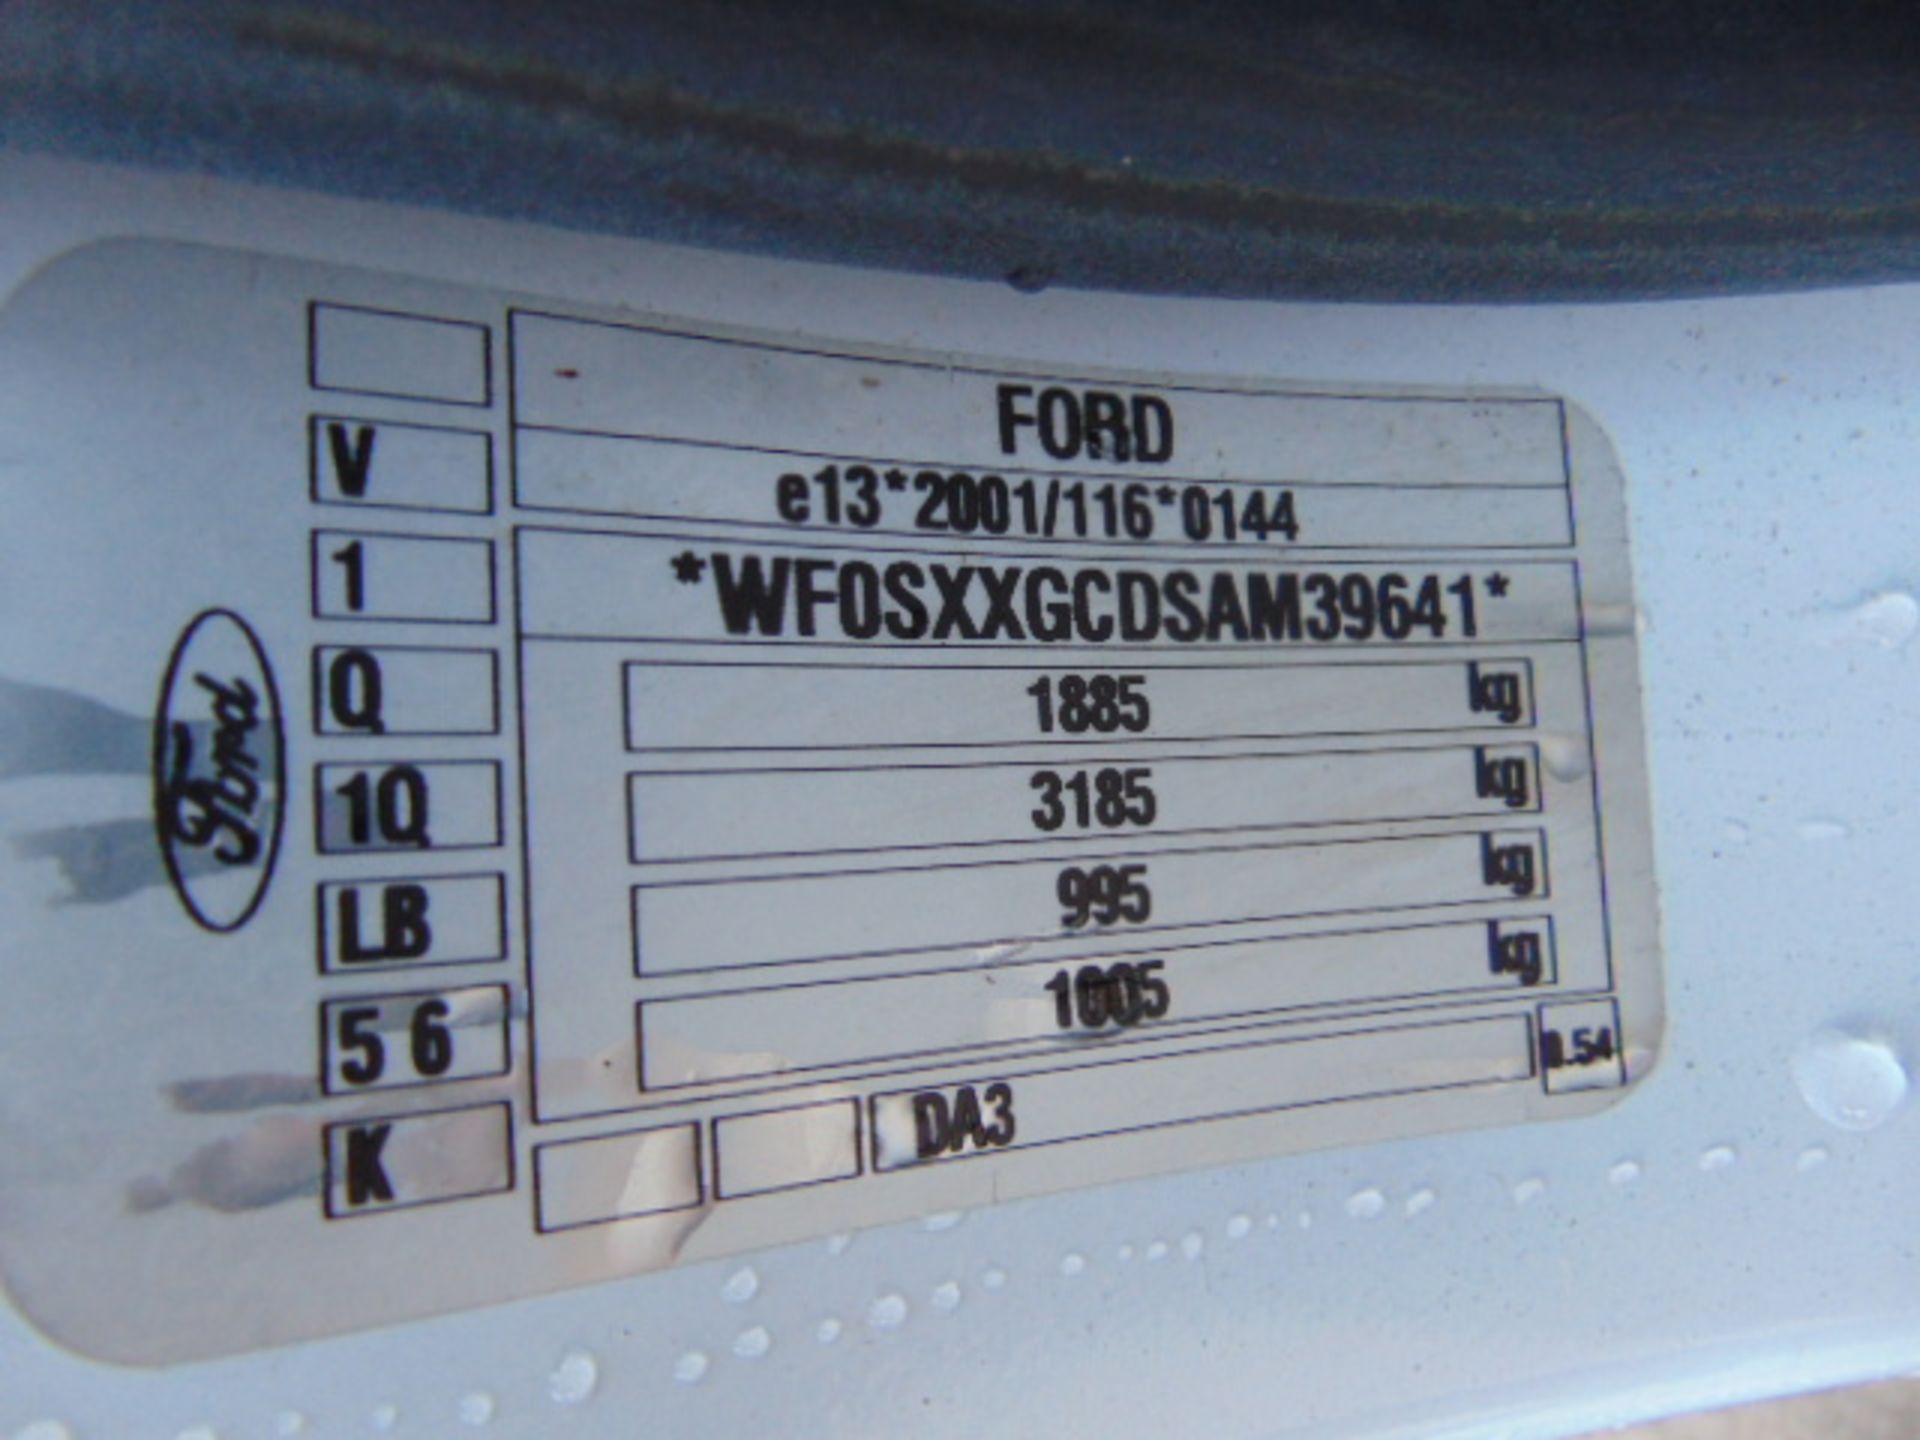 Ford Focus 1.6 TD Estate - Image 15 of 16